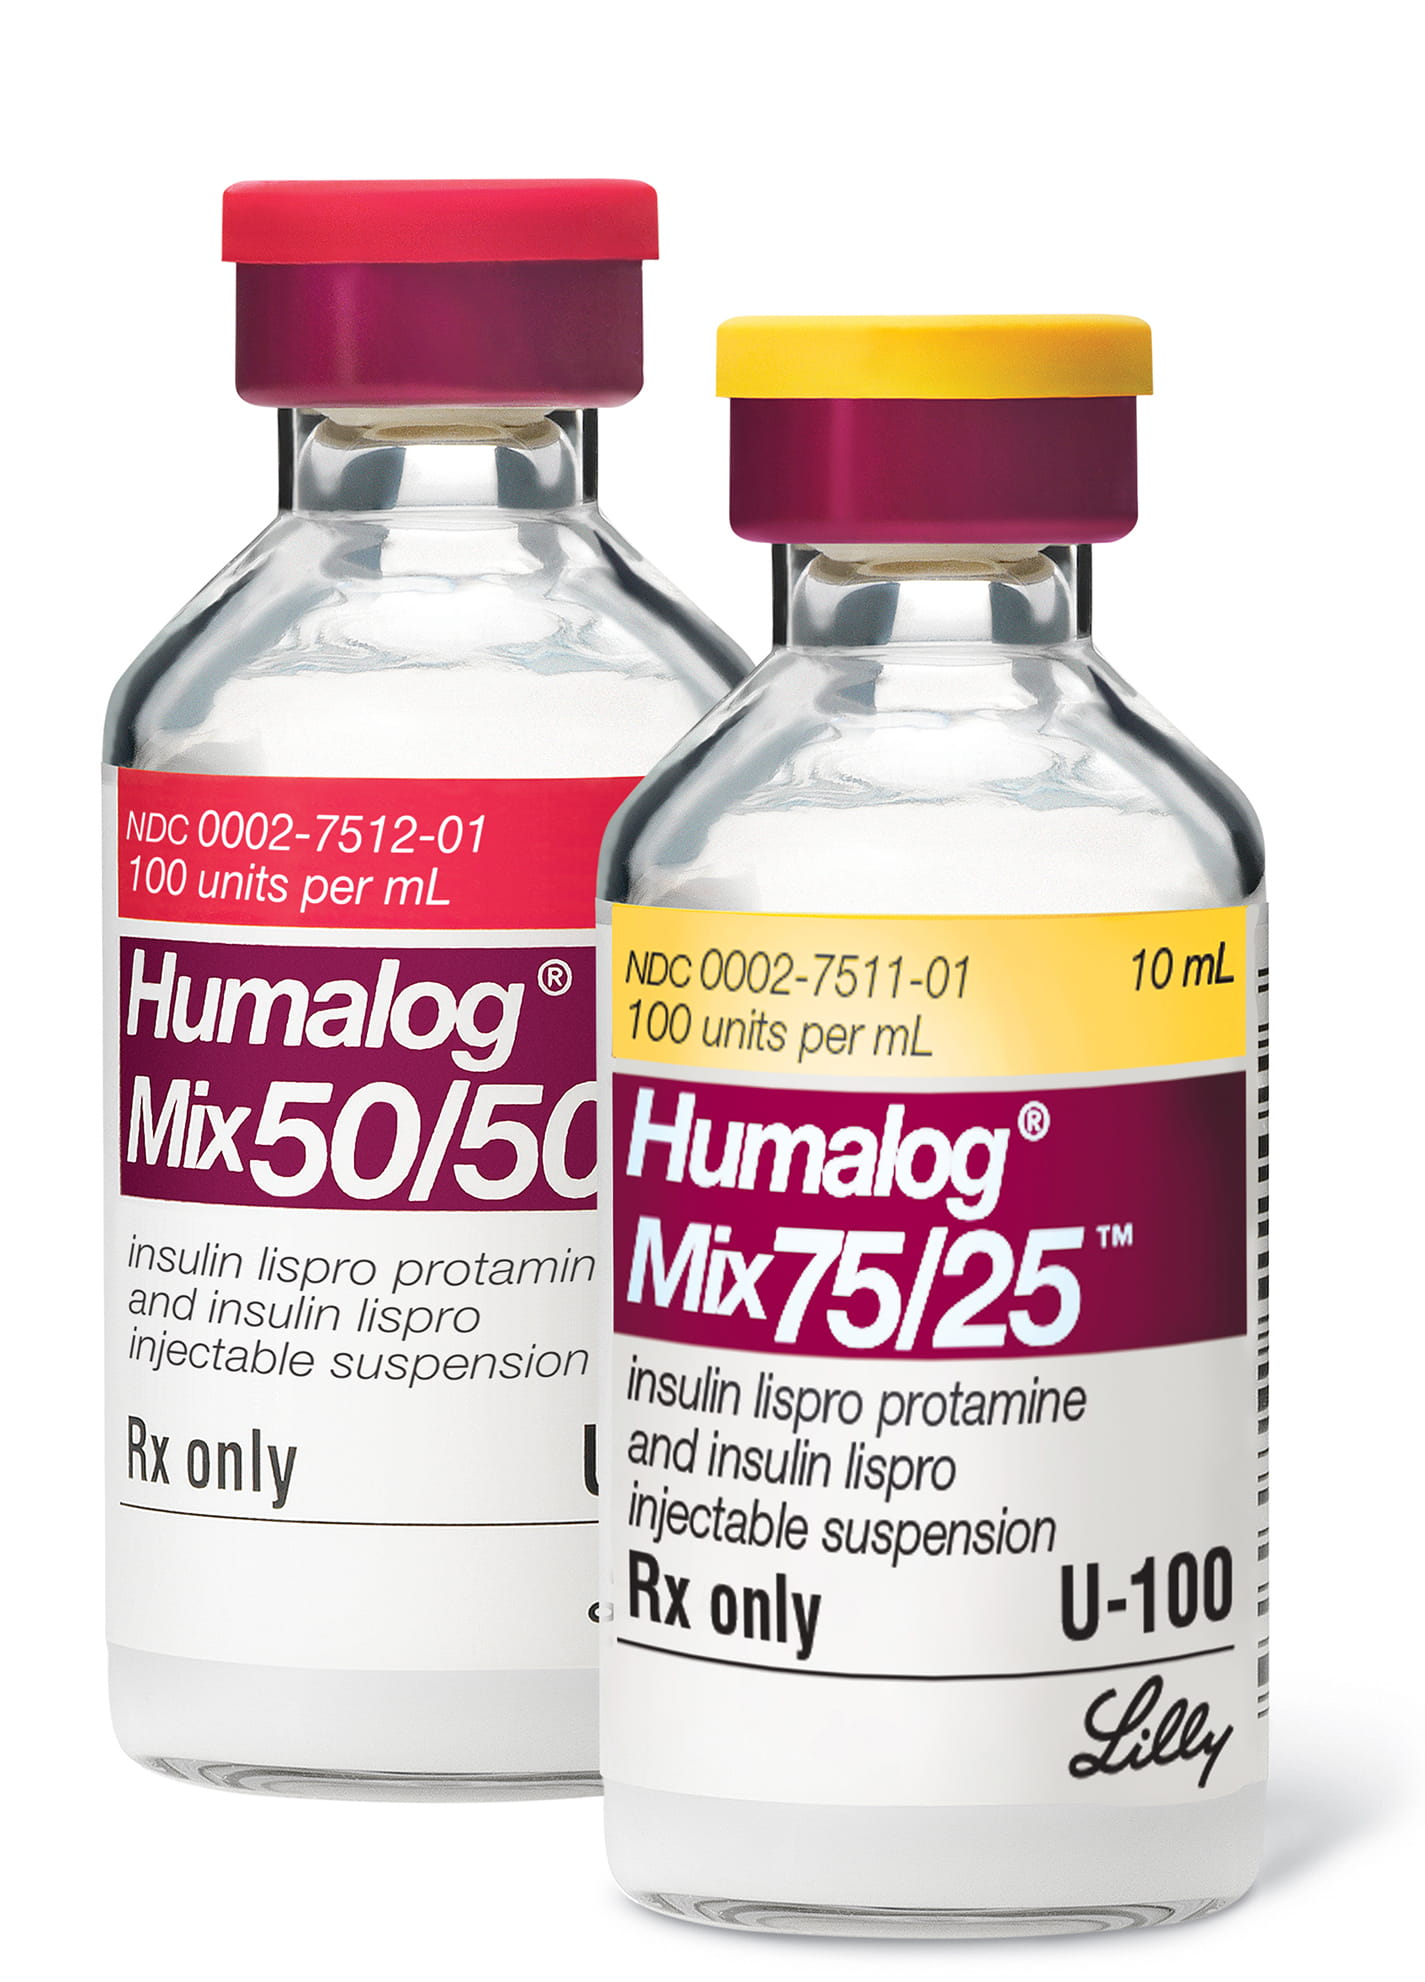 Humalog Mix50/50 and Humalog Mix75/25 insulin vials